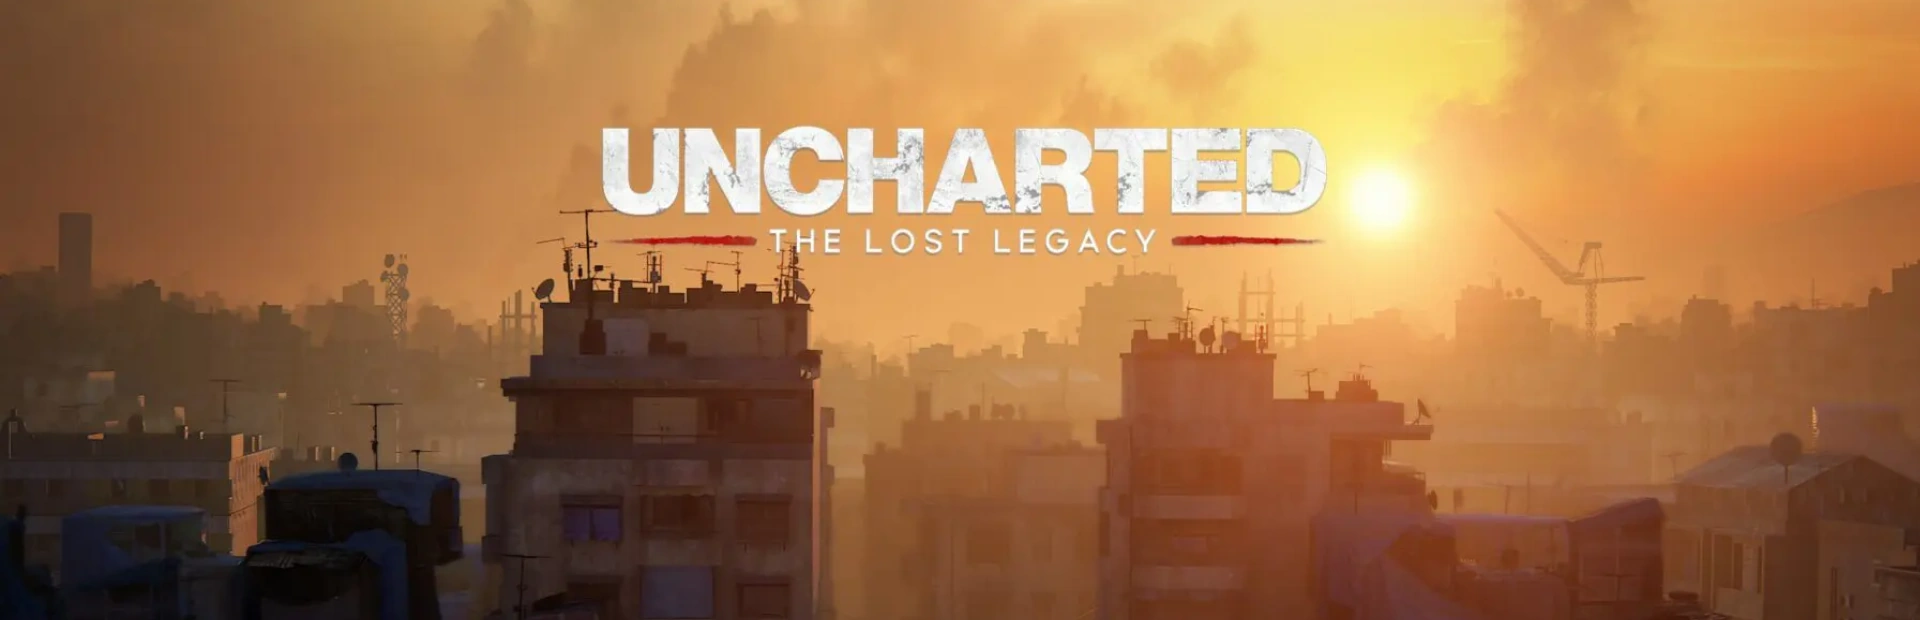 دانلود بازی Uncharted: Legacy of Thieves برای PC | گیمباتو